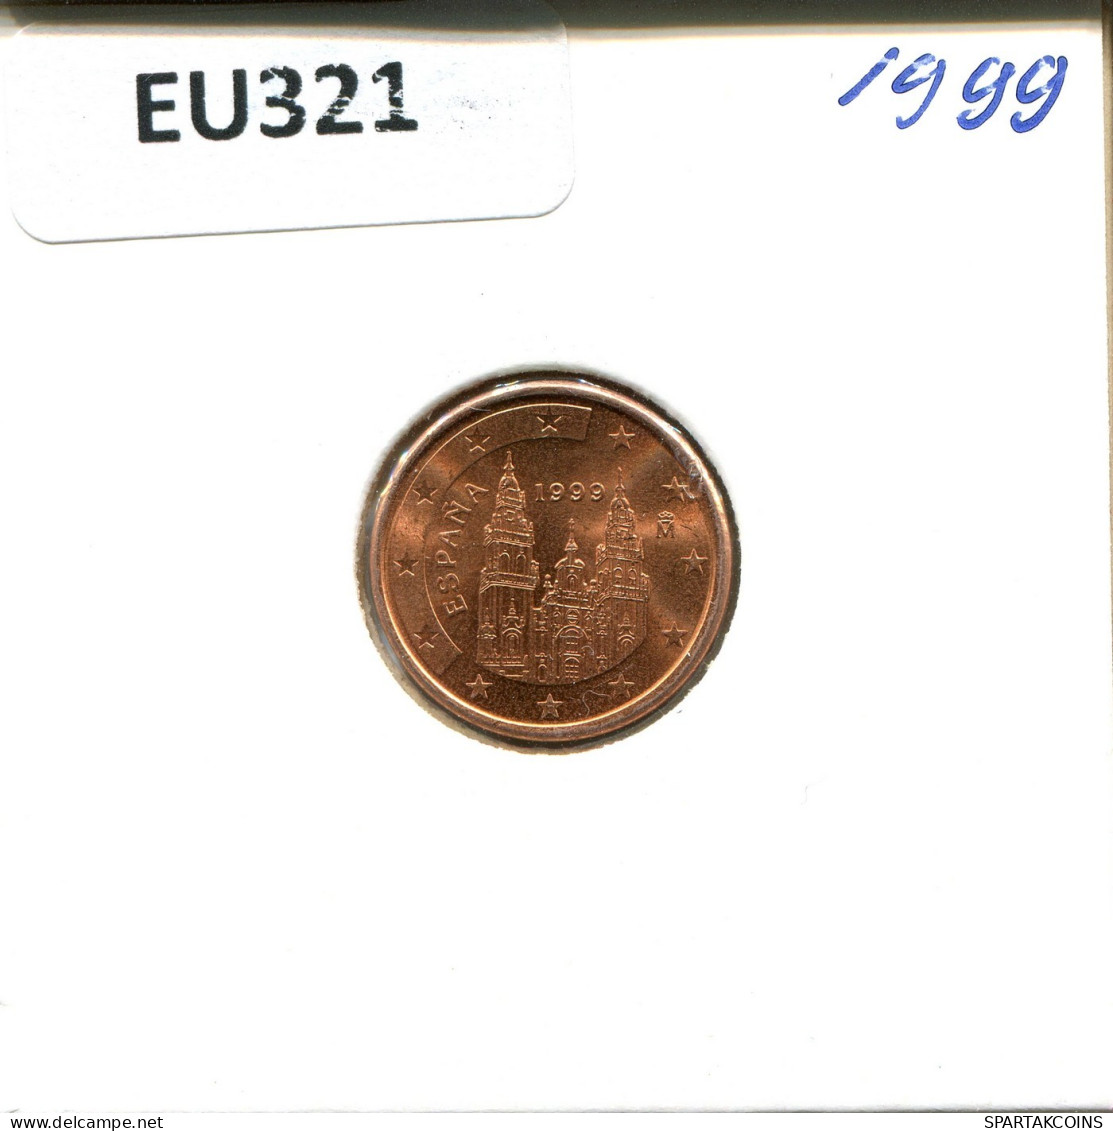 1 EURO CENT 1999 SPANIEN SPAIN Münze #EU321.D.A - Spanien